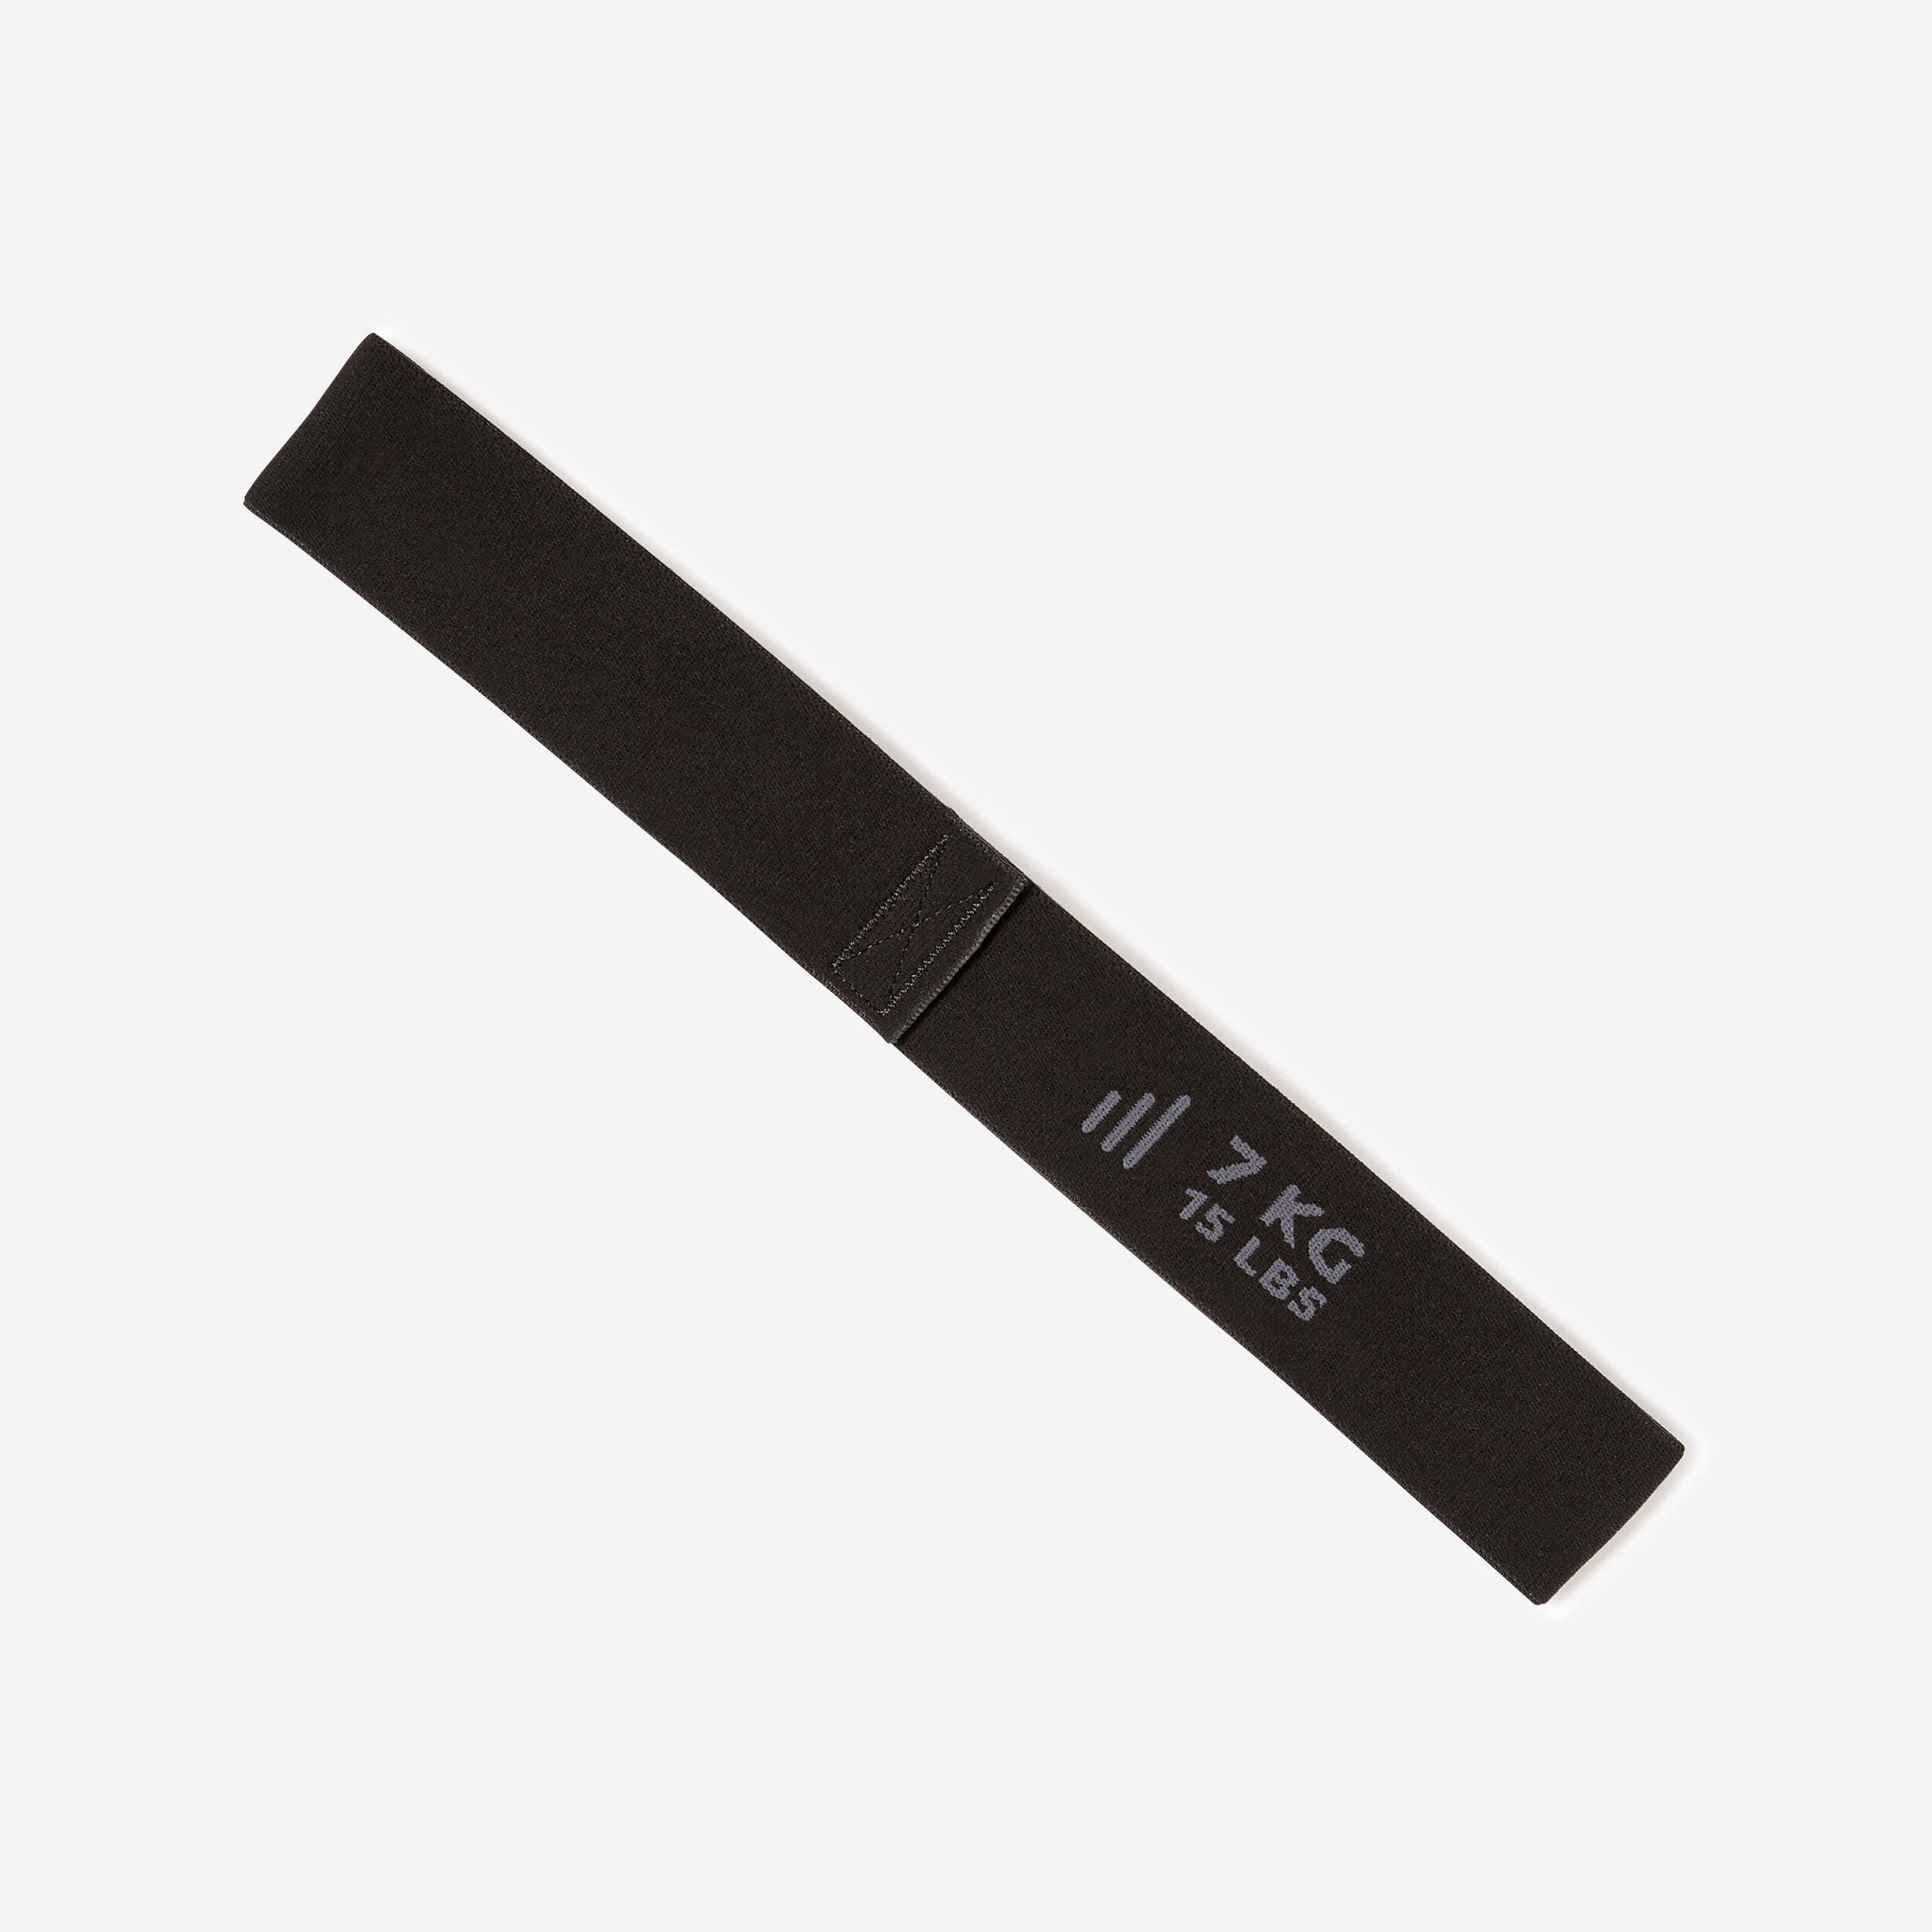 Bandă elastică mini textilă Fitness rezistență 7 kg Negru Bandă